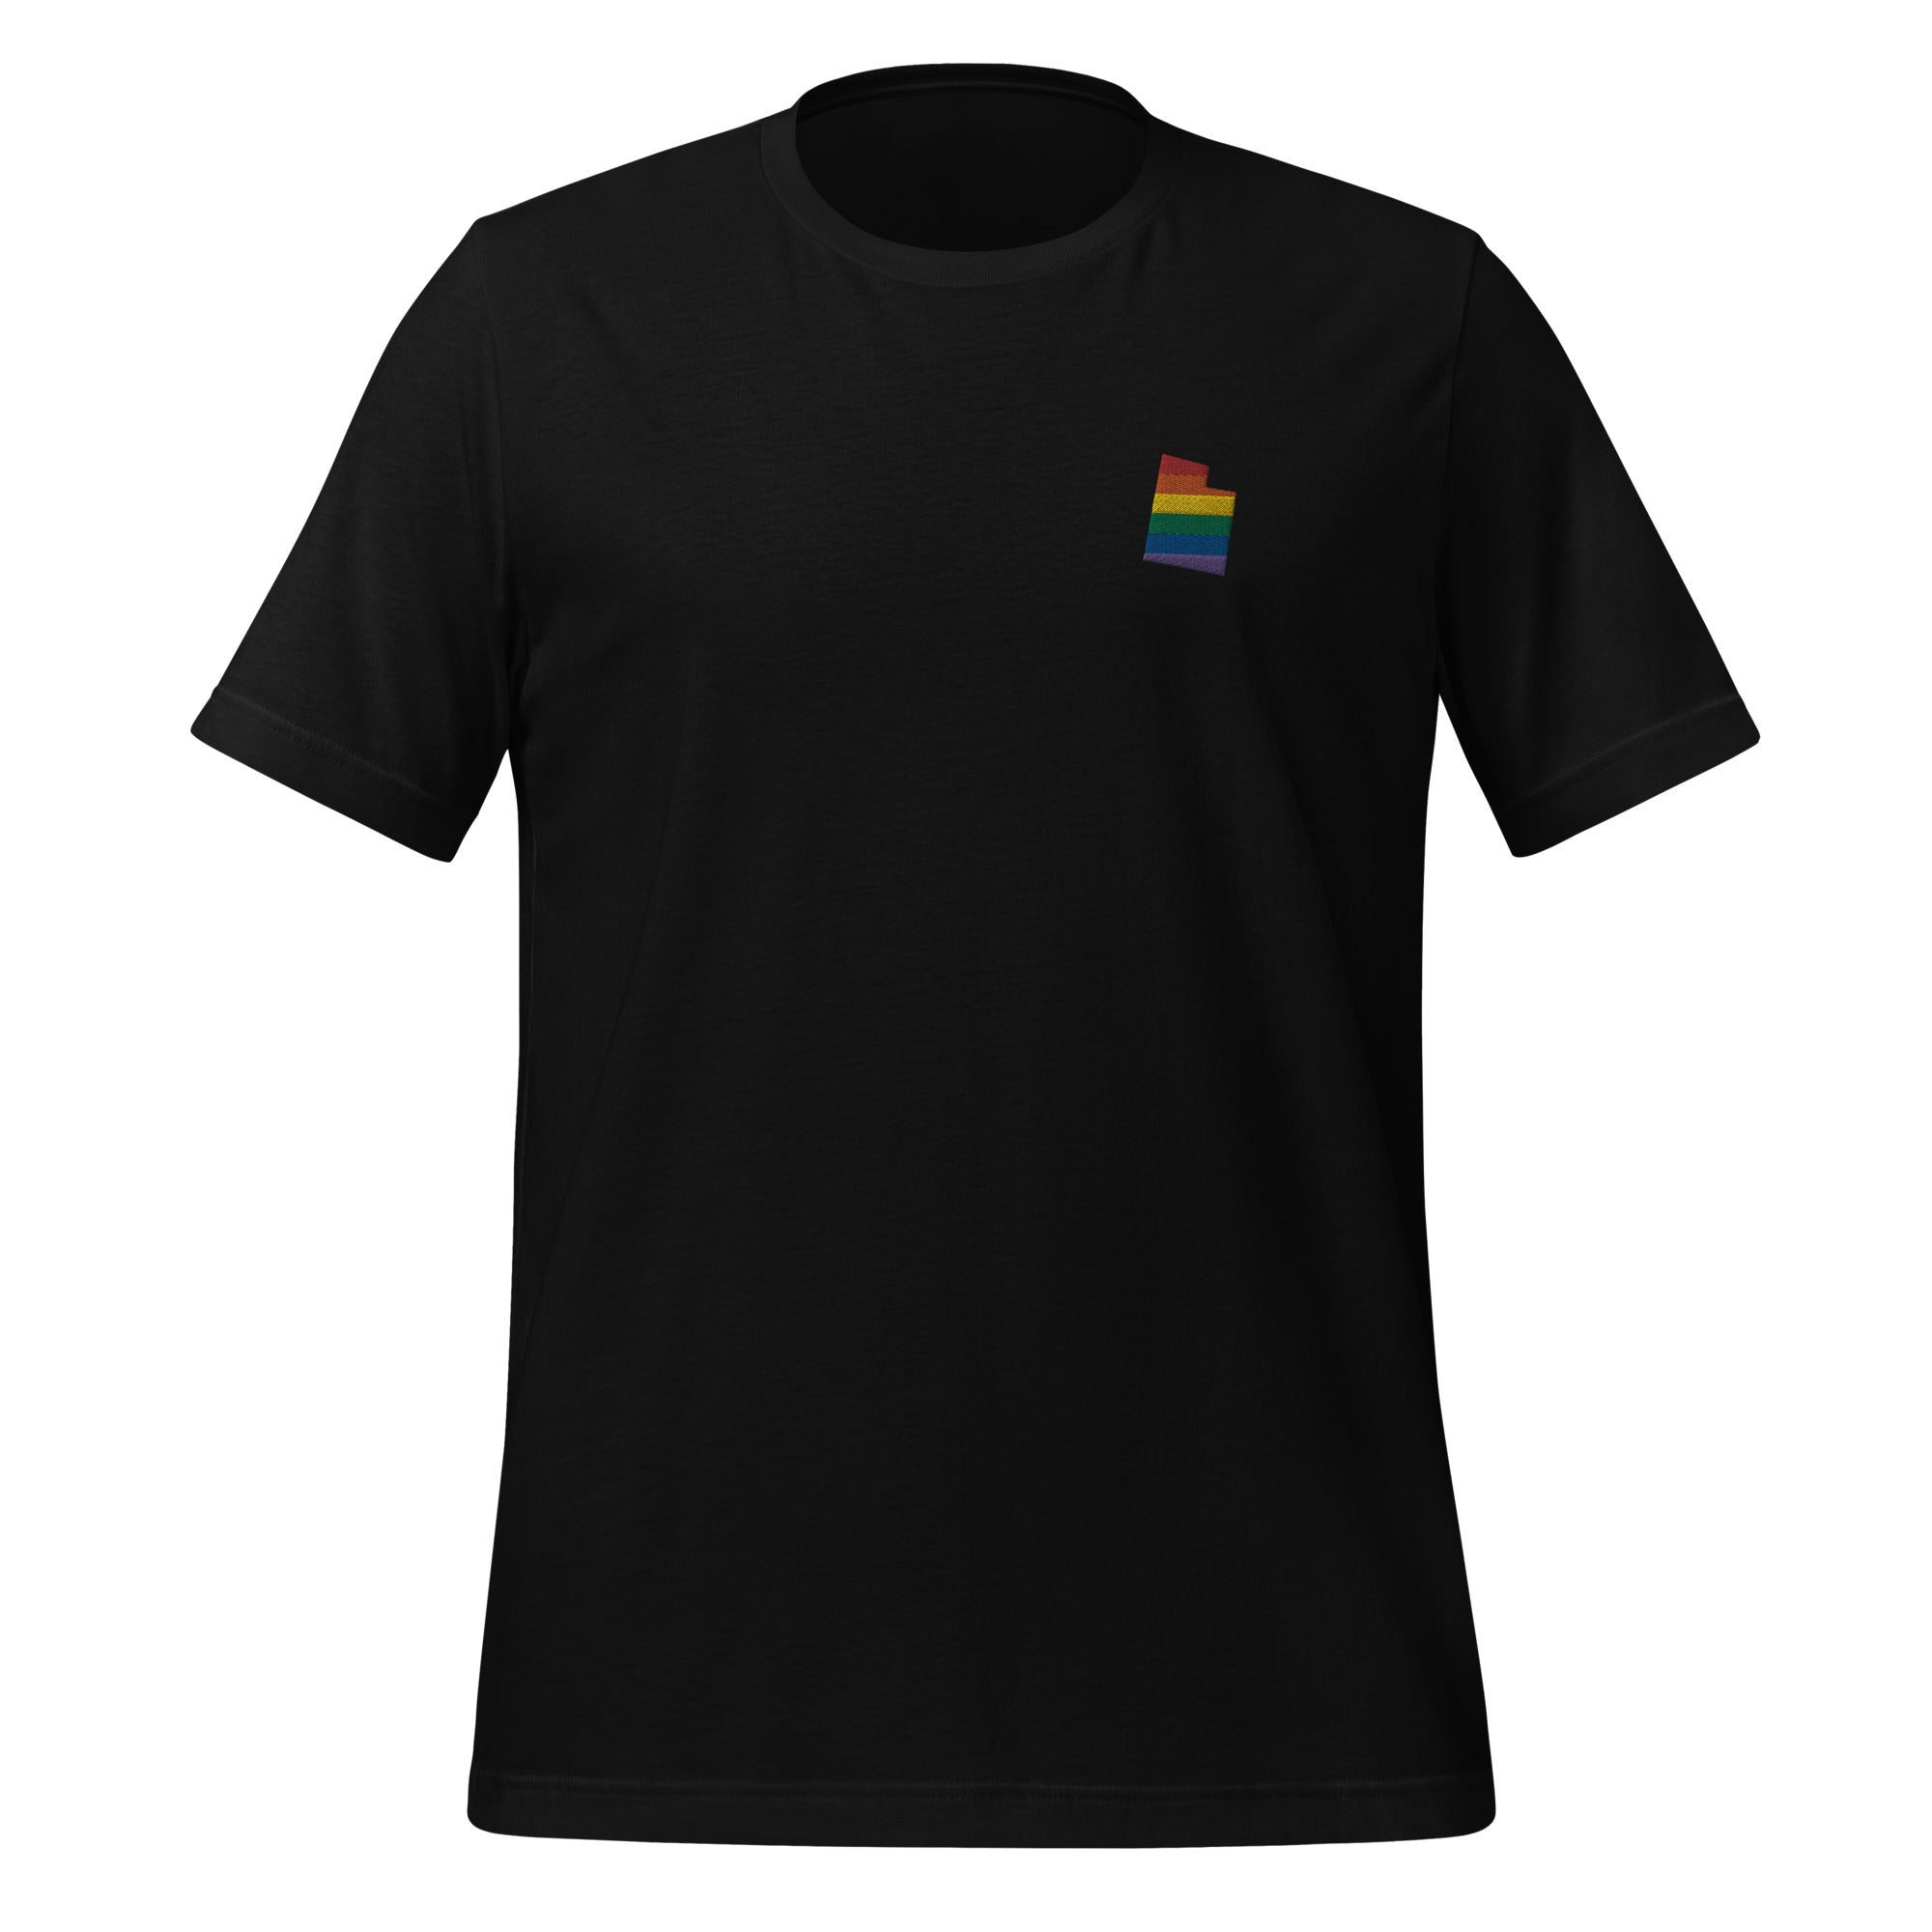 Utah Rainbow Embroidered Unisex T-Shirt